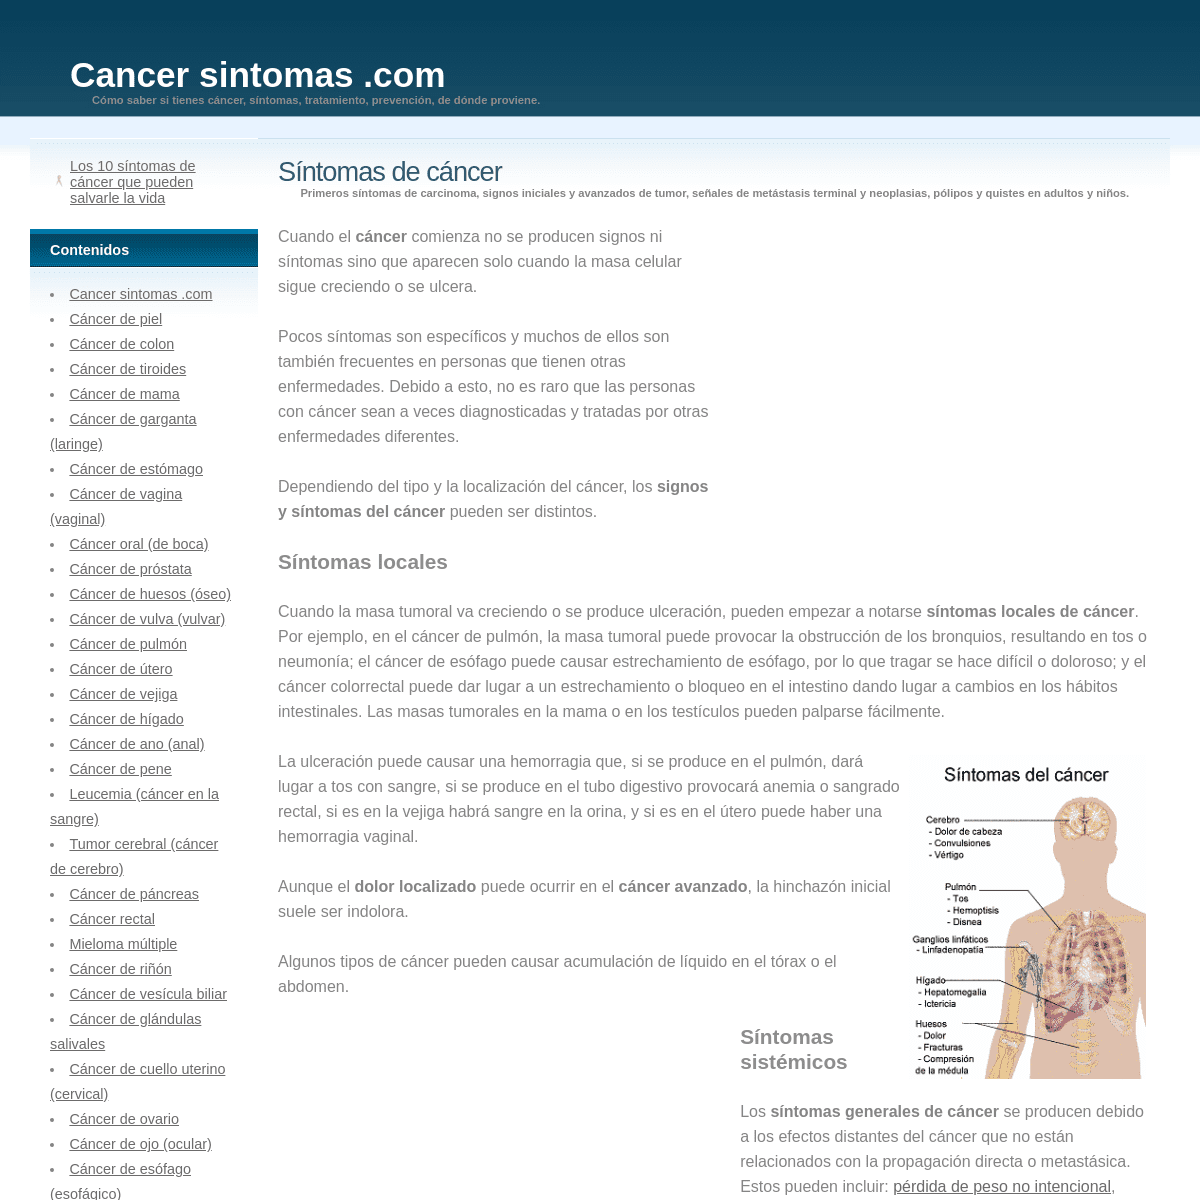 A complete backup of cancersintomas.com